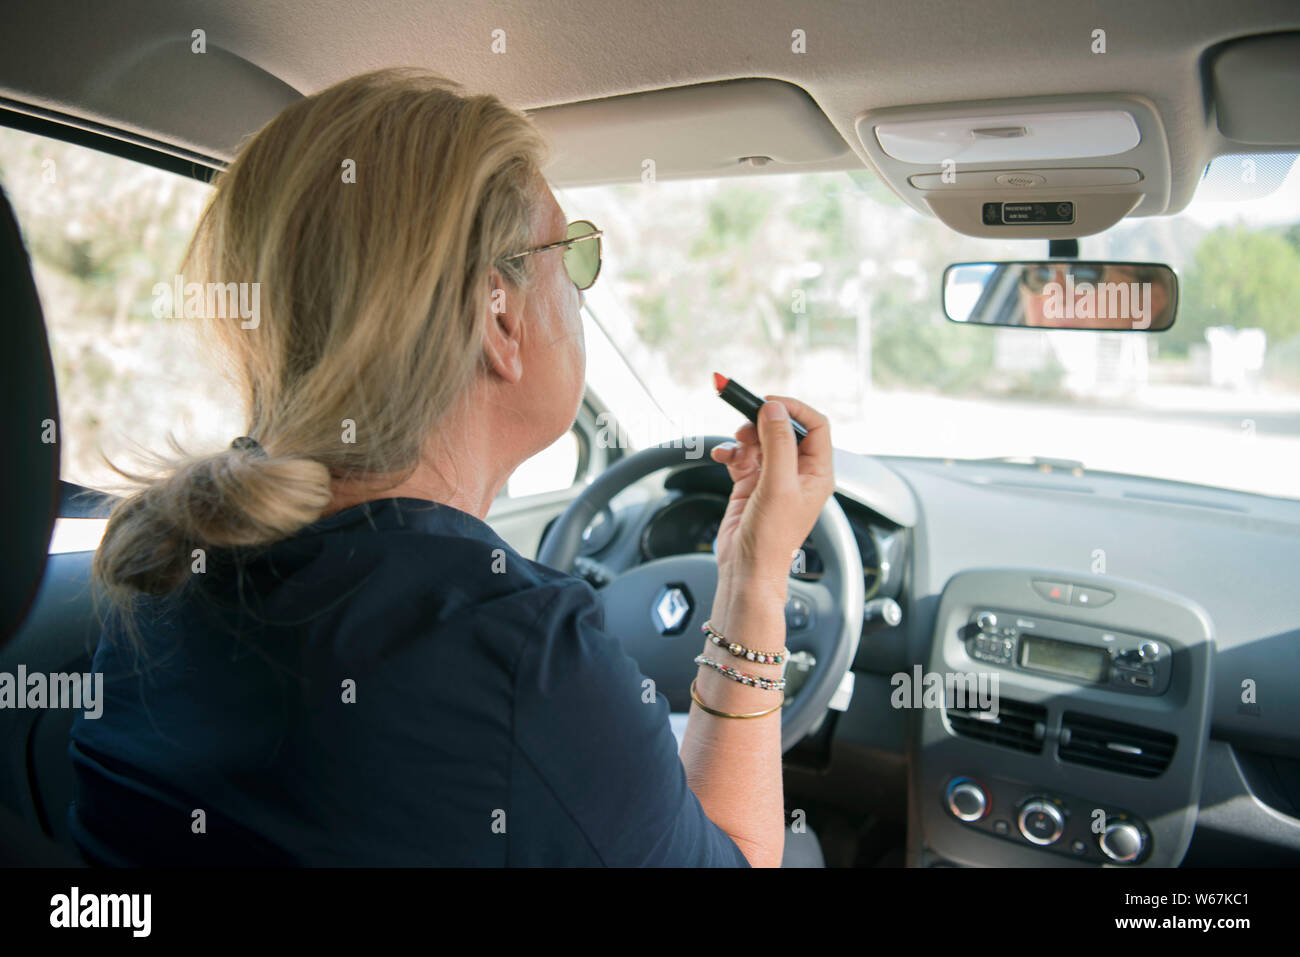 Frau schminkt sich während sie ein Fahrzeug steuert Stock Photo